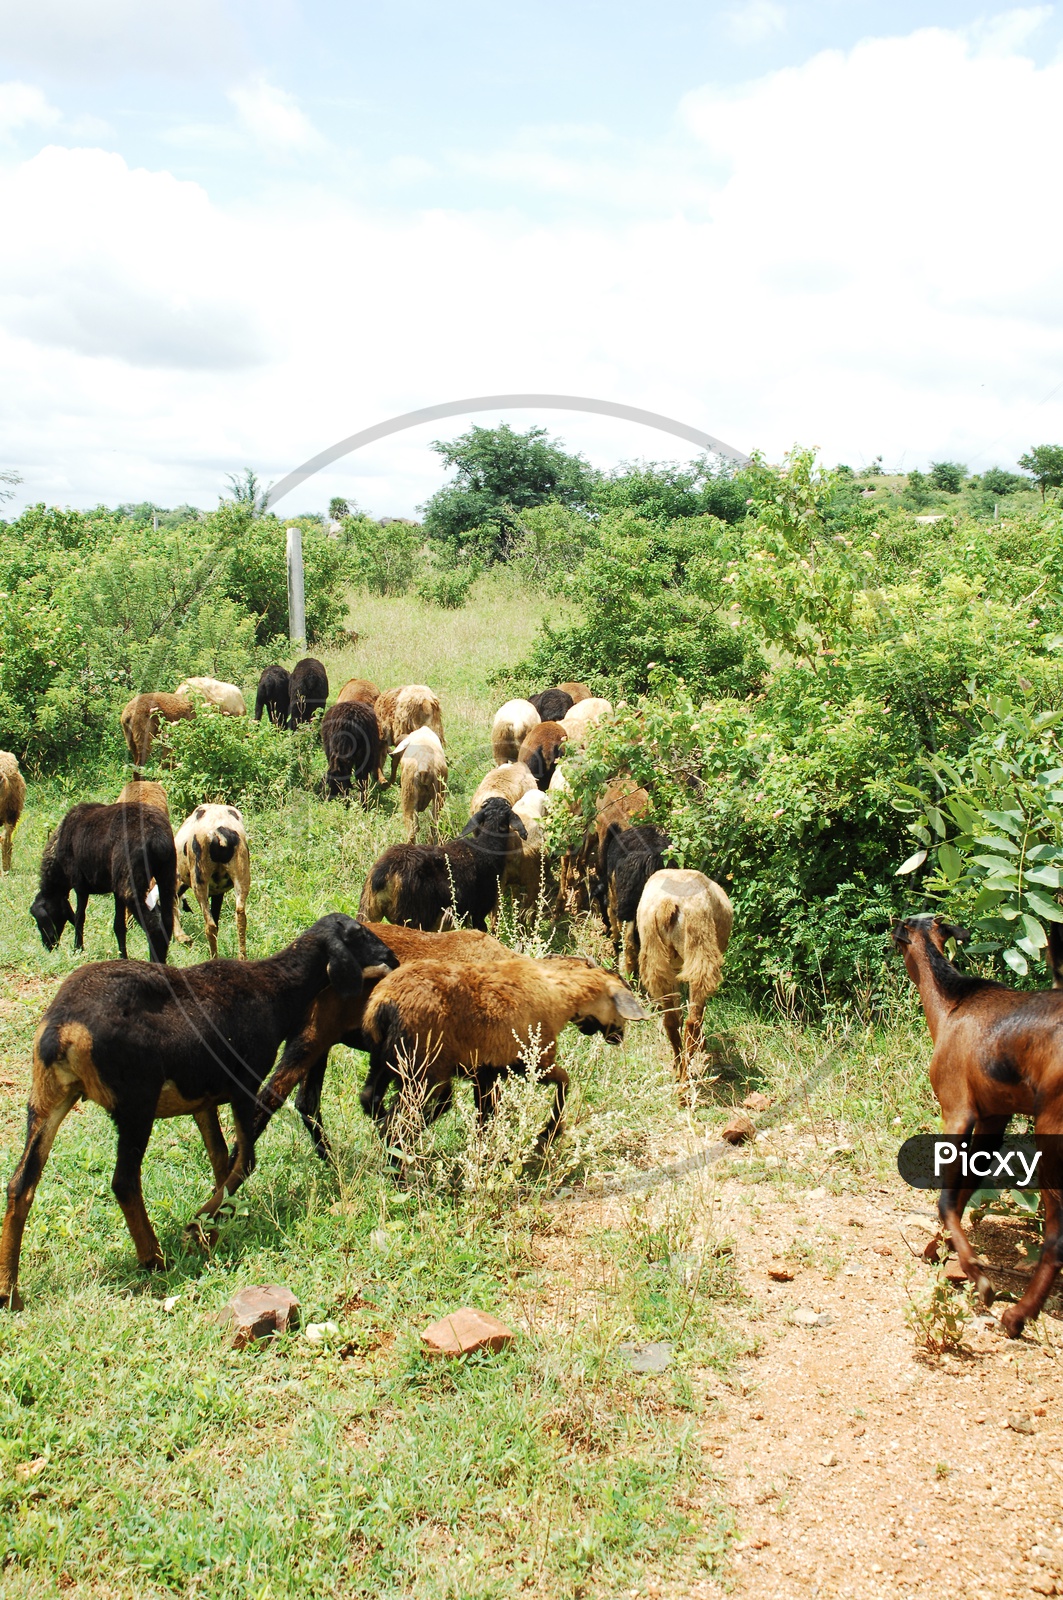 A herd of goats grazing